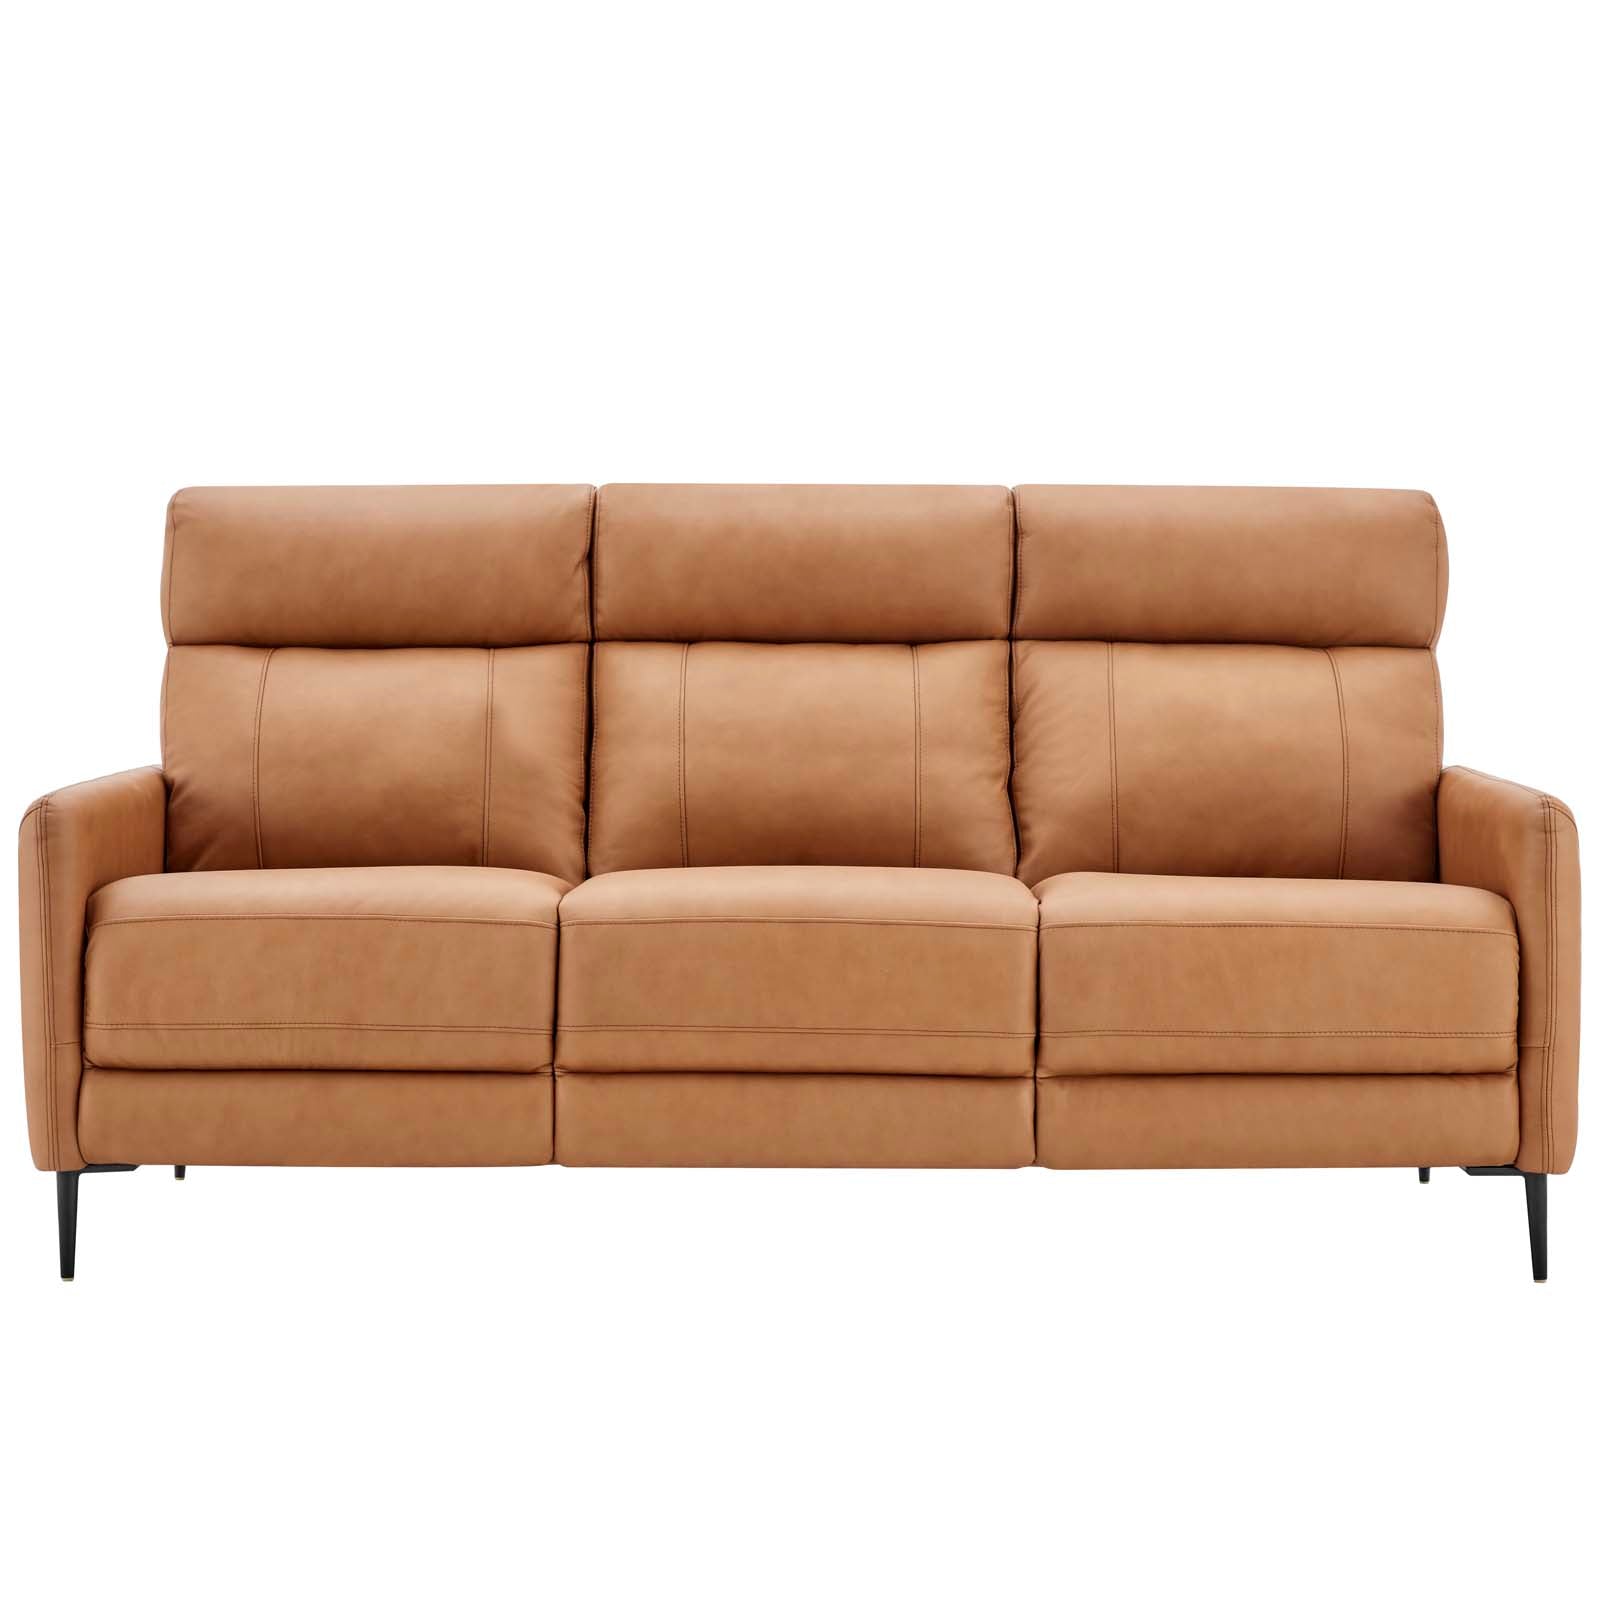 Modway Sofas & Couches - Huxley Leather Sofa Tan